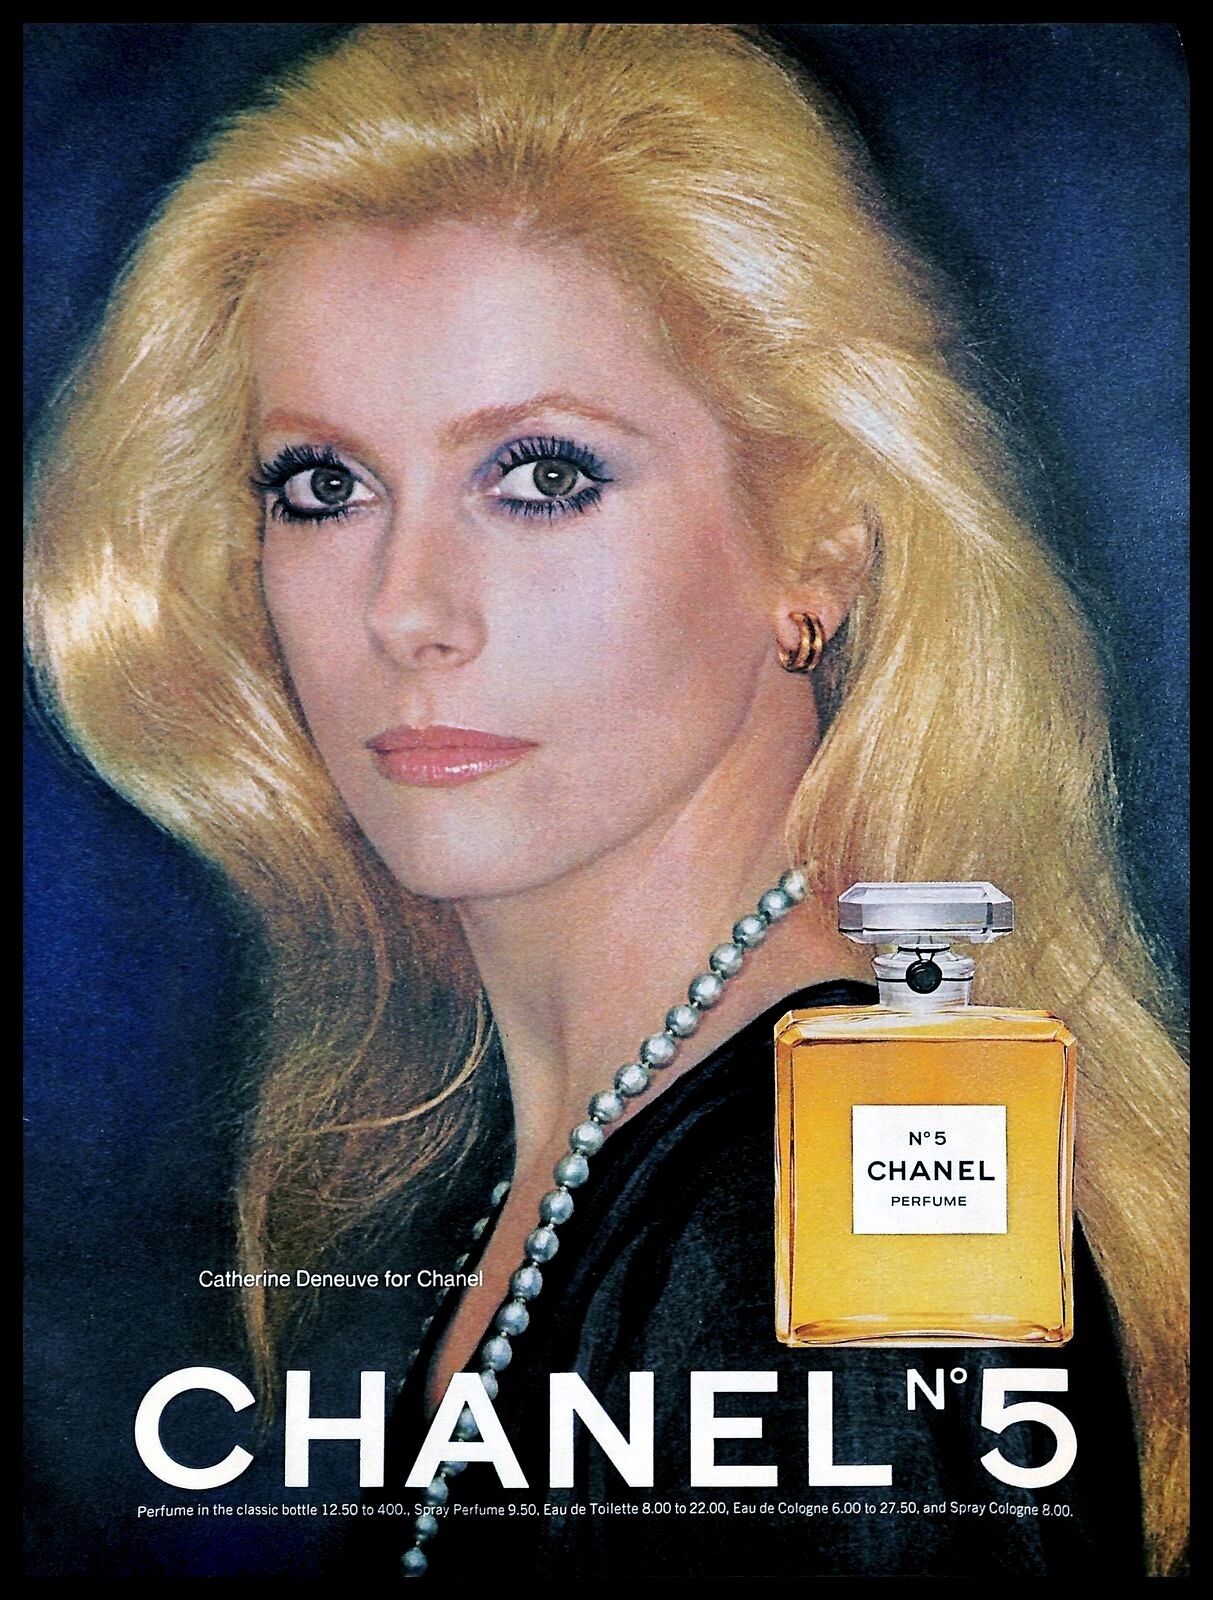 1976 Chanel No 5 Perfume Vintage Photo Print Ad Catherine Deneuve  Actress 1970s